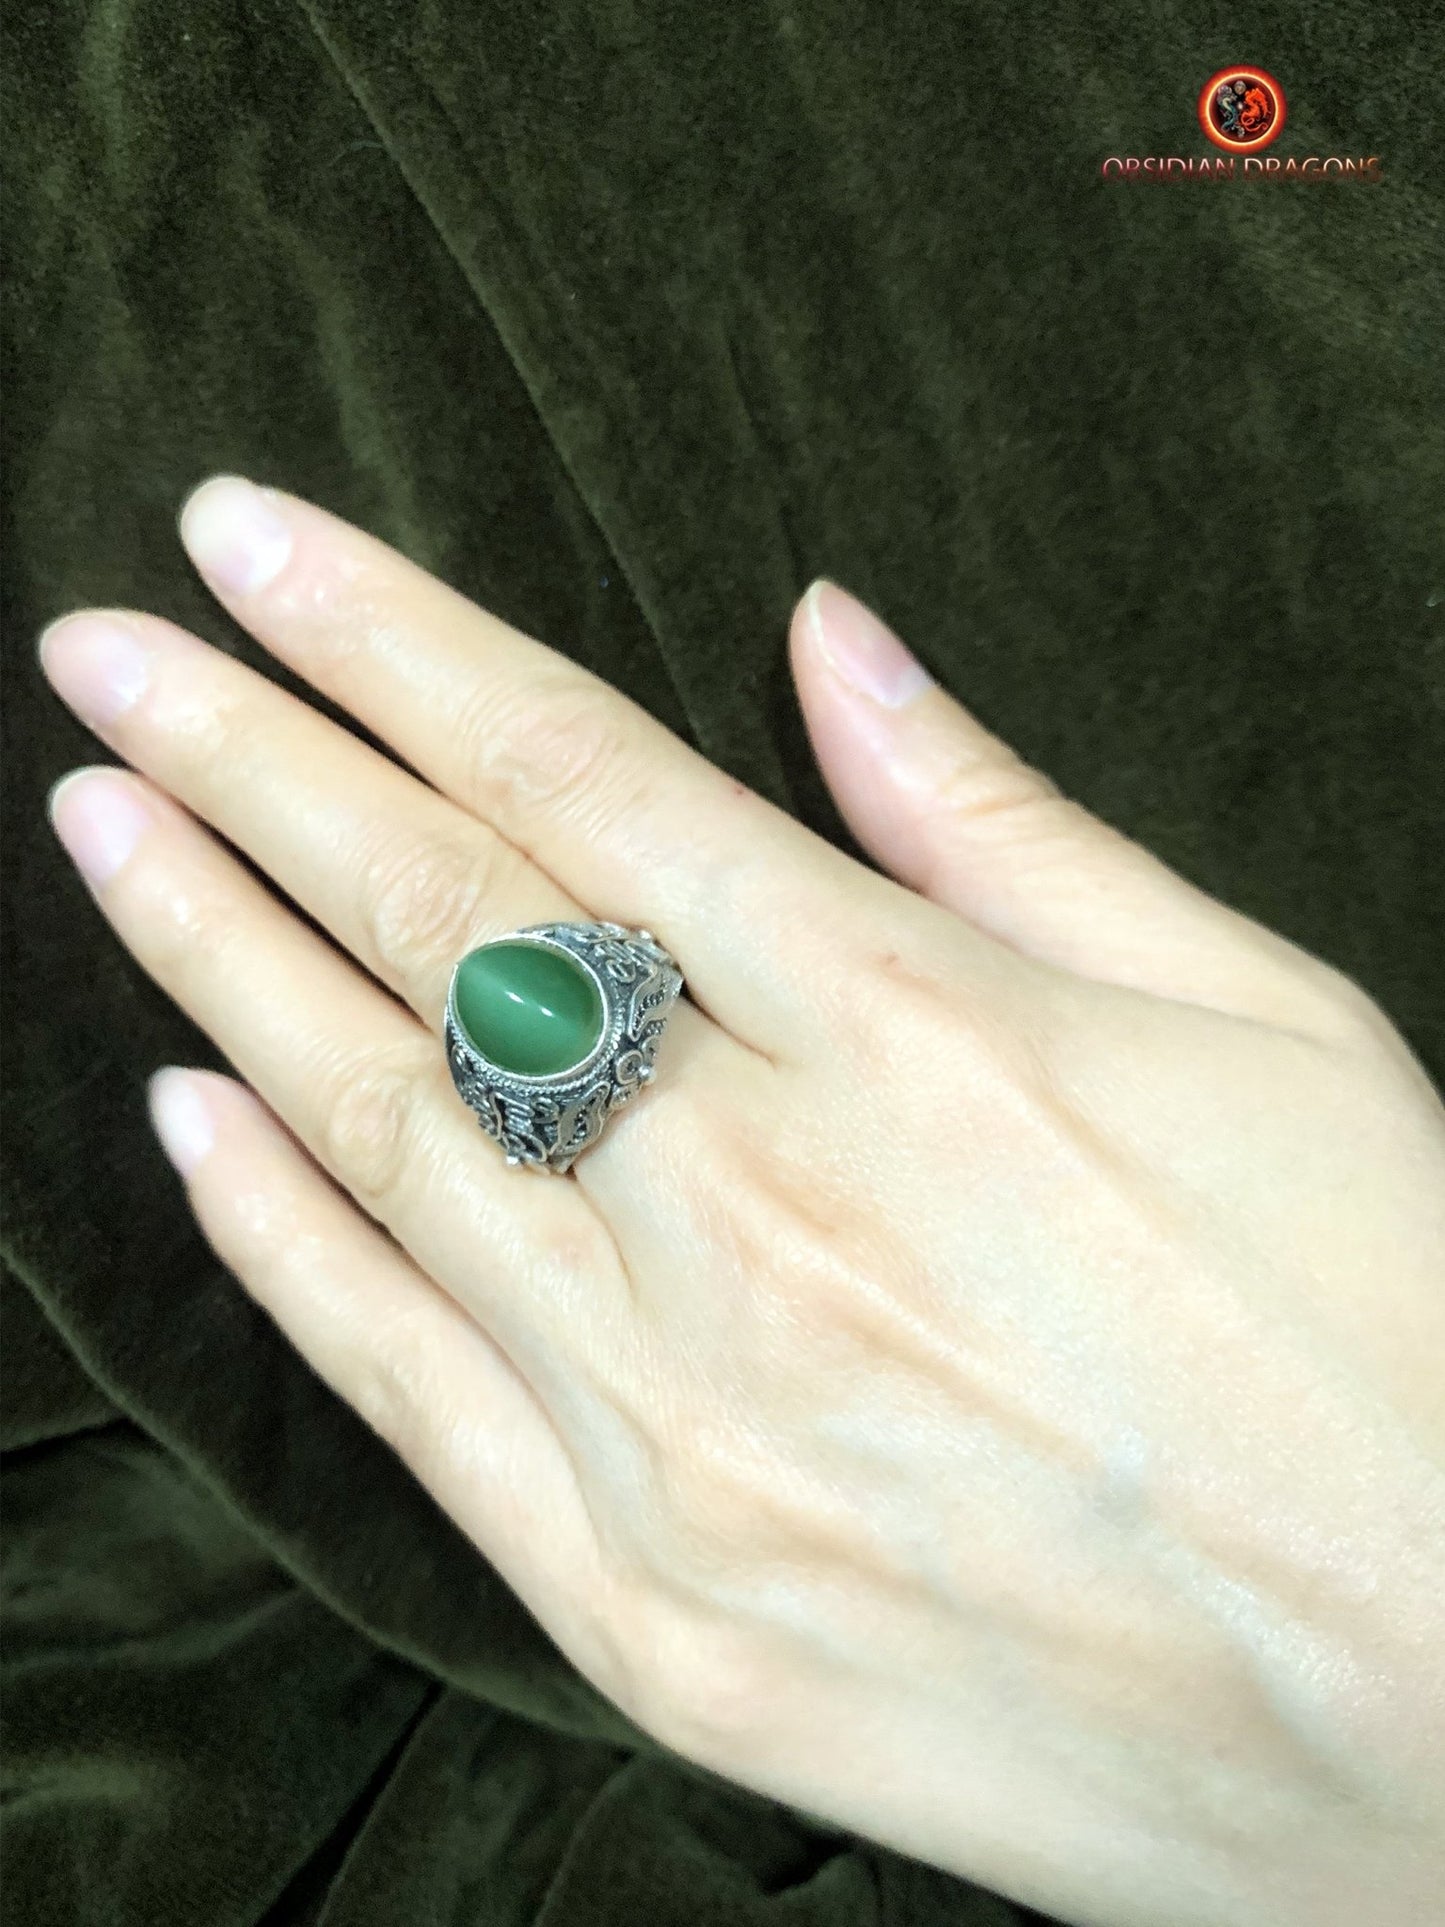 Bague en jade "oeil de chat"- Argent filigrané- Unique | obsidian dragons